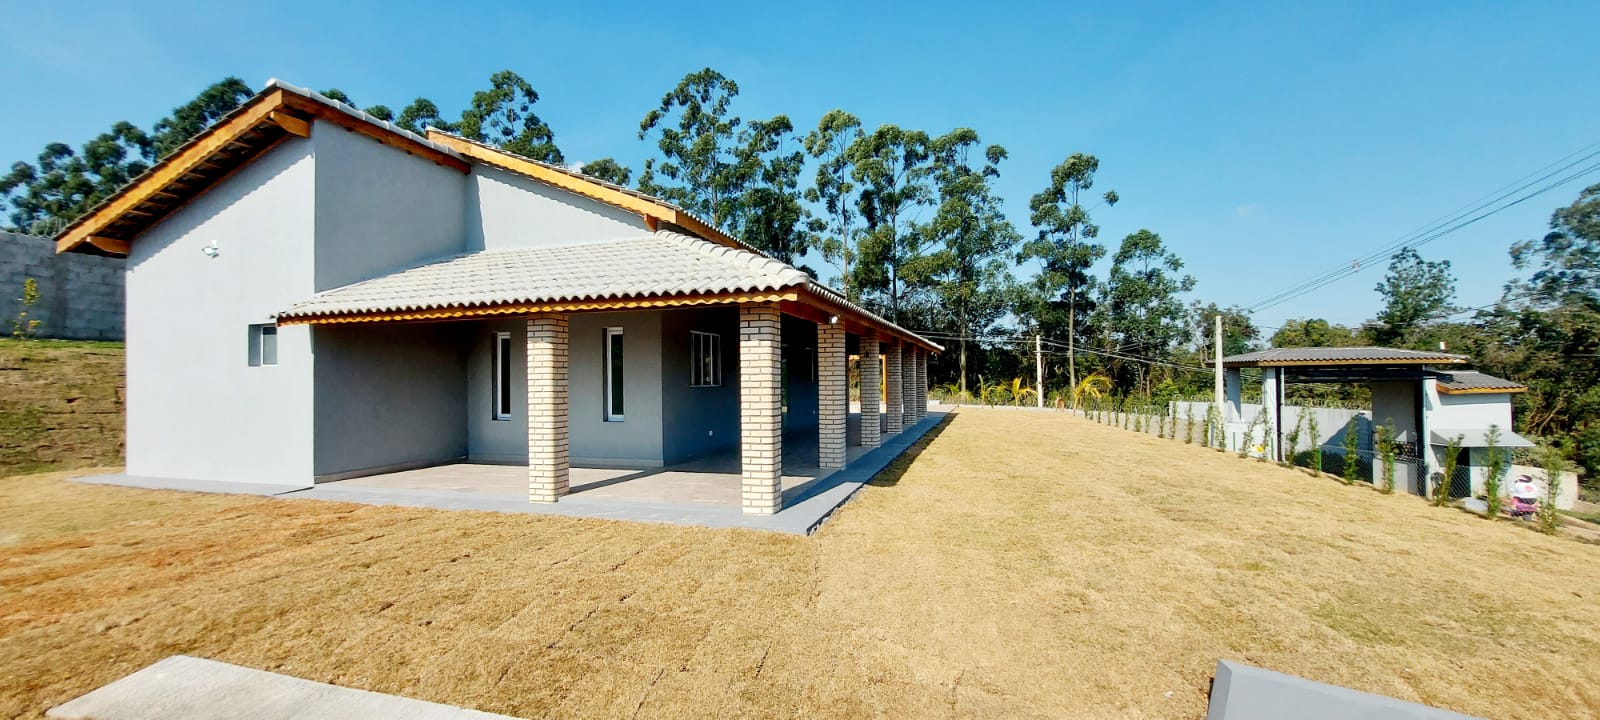 Chácara Nova em condomínio alto padrão no bairro Dona Catarina  Mairinque - 